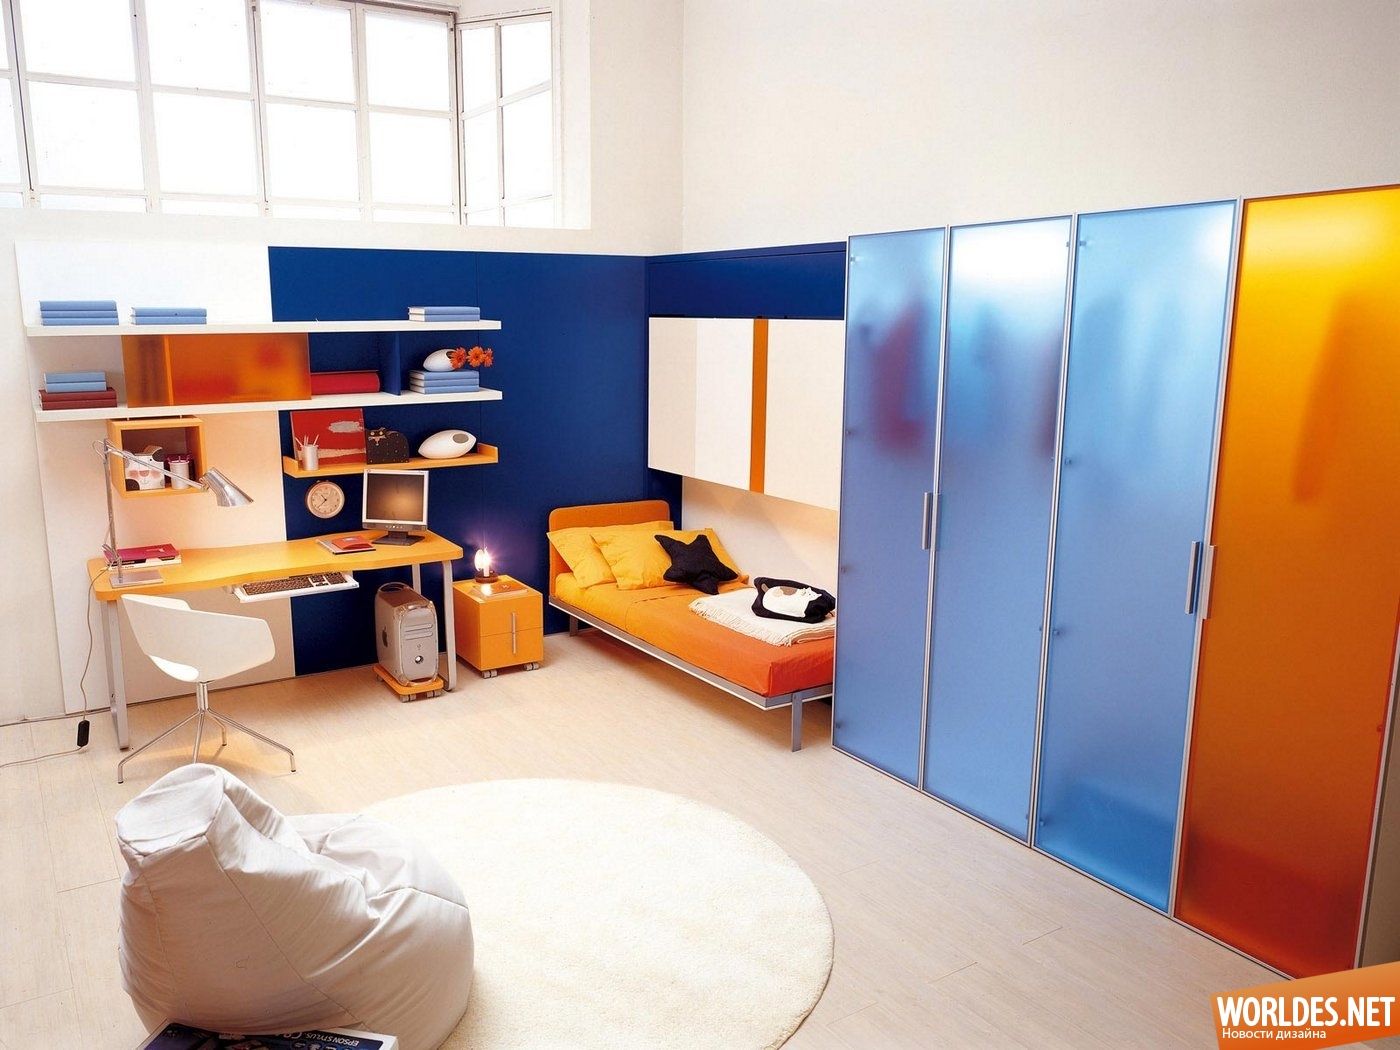 детская комната, детские комнаты, многофункциональная мебель, мебель для детской комнаты